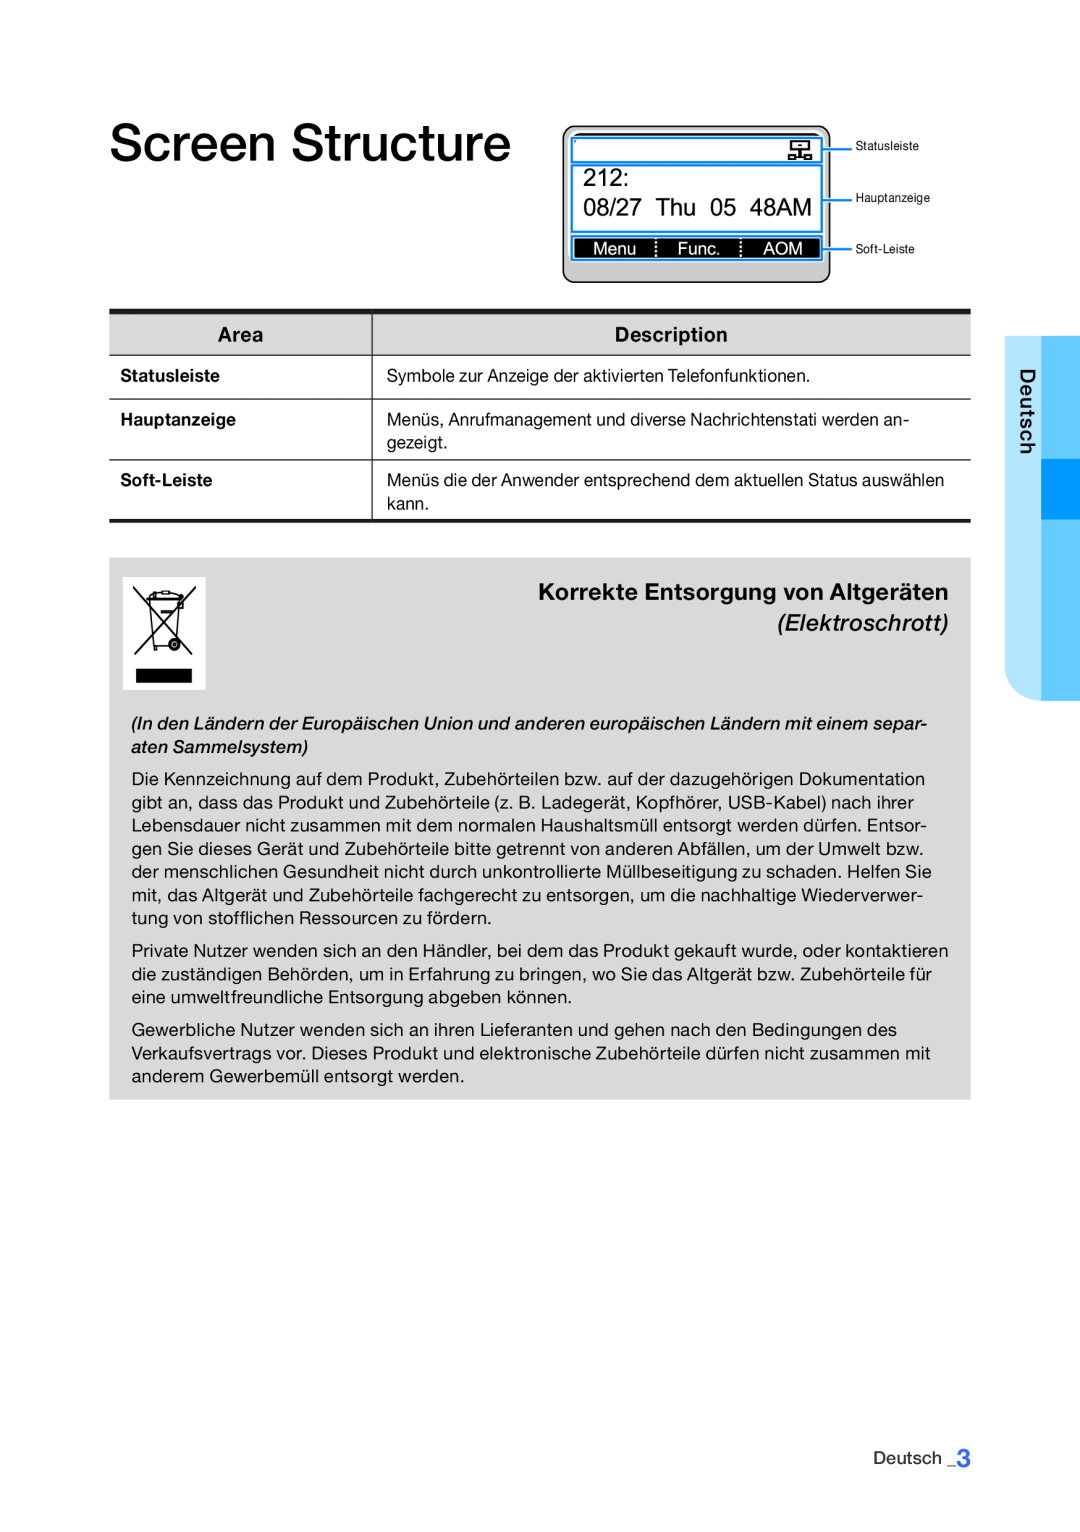 Samsung Smt-i5210 Korrekte Entsorgung von Altgeräten Elektroschrott, Screen Structure, Area, Description, Statusleiste 